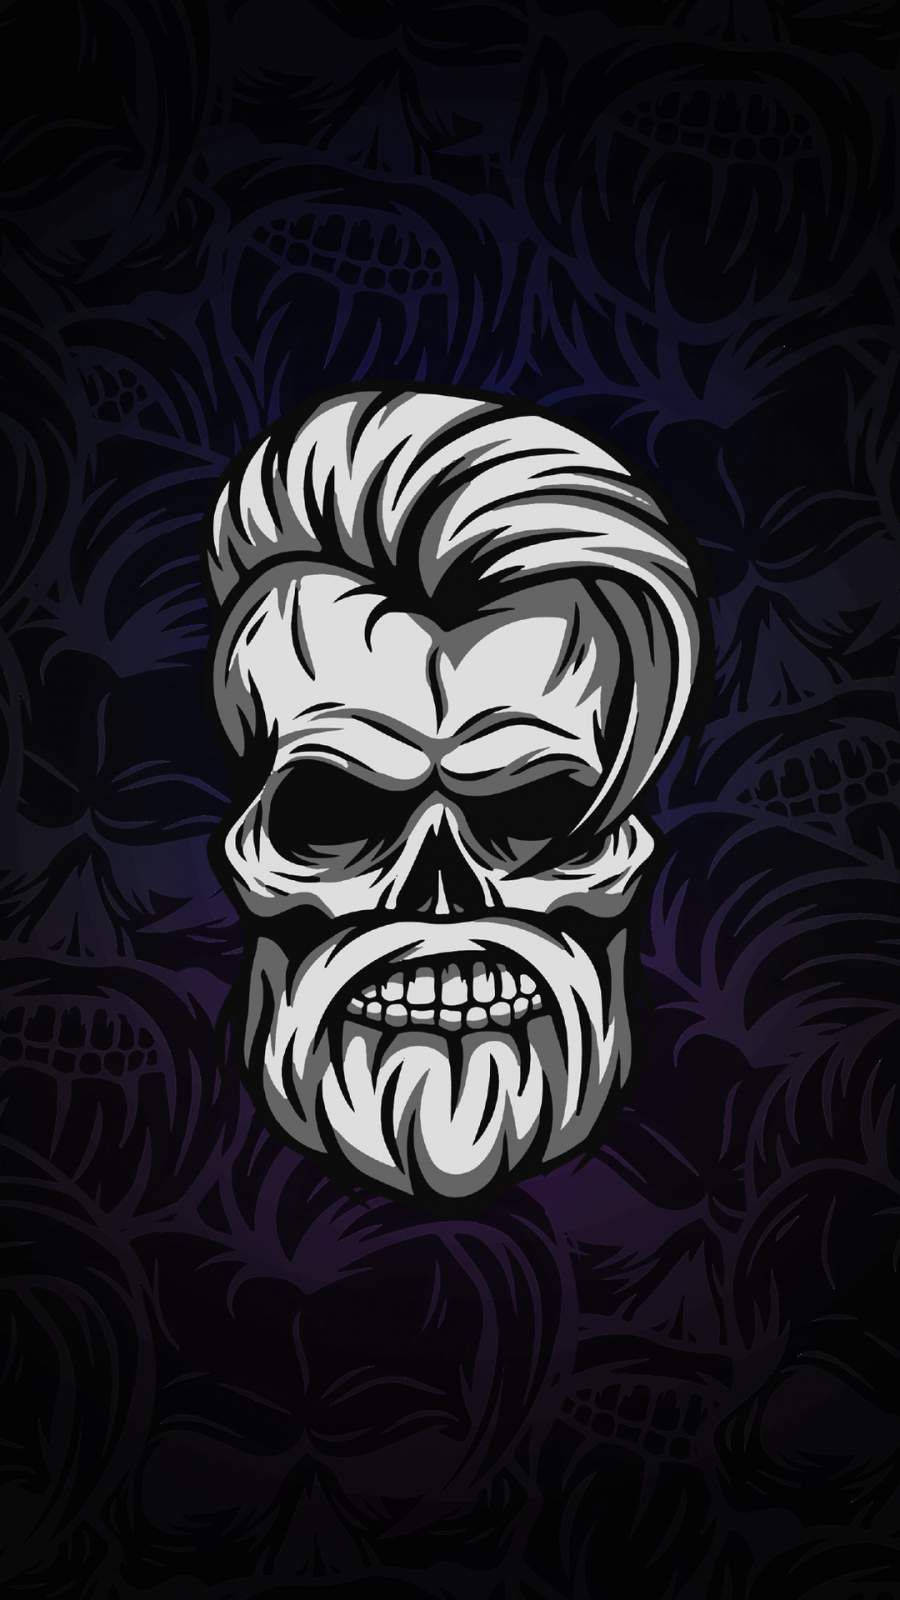 Free Skull Wallpaper Downloads, [600+] Skull Wallpapers for FREE |  